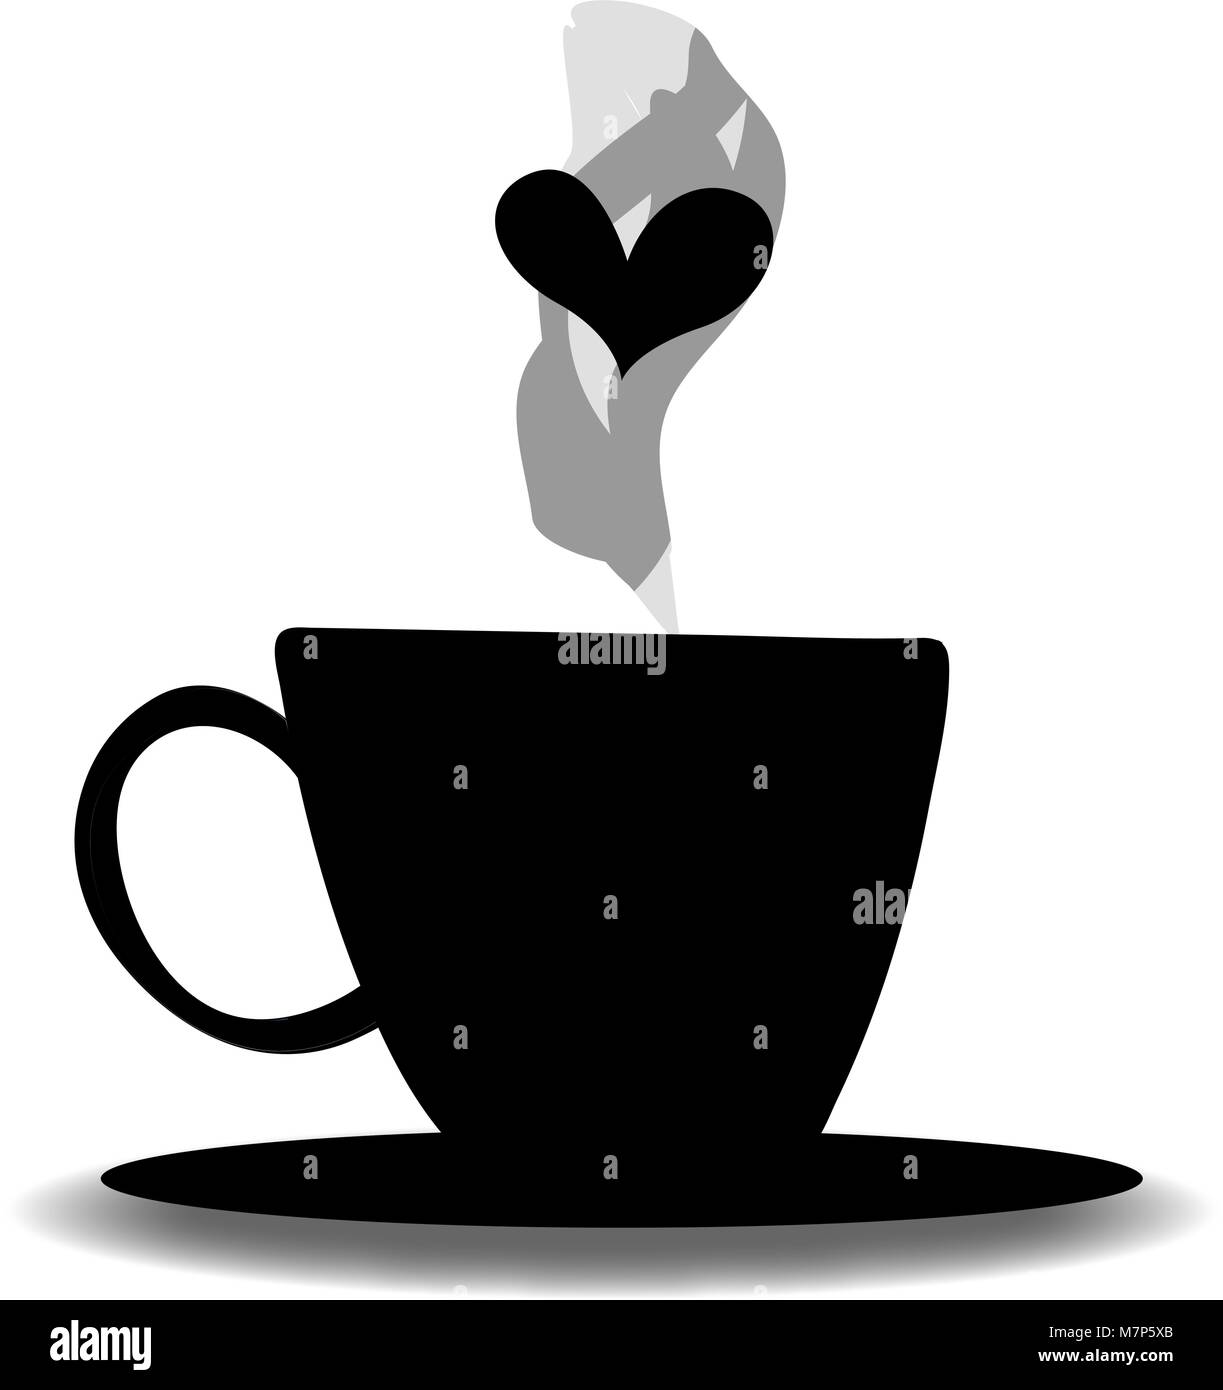 Schwarze Silhouette aus Tee oder Kaffee Tasse mit Dampf und Herz auf weißem  Hintergrund. Vector Illustration, Symbol, Logo, Zeichen, Symbol der trinken  Becher Stock-Vektorgrafik - Alamy